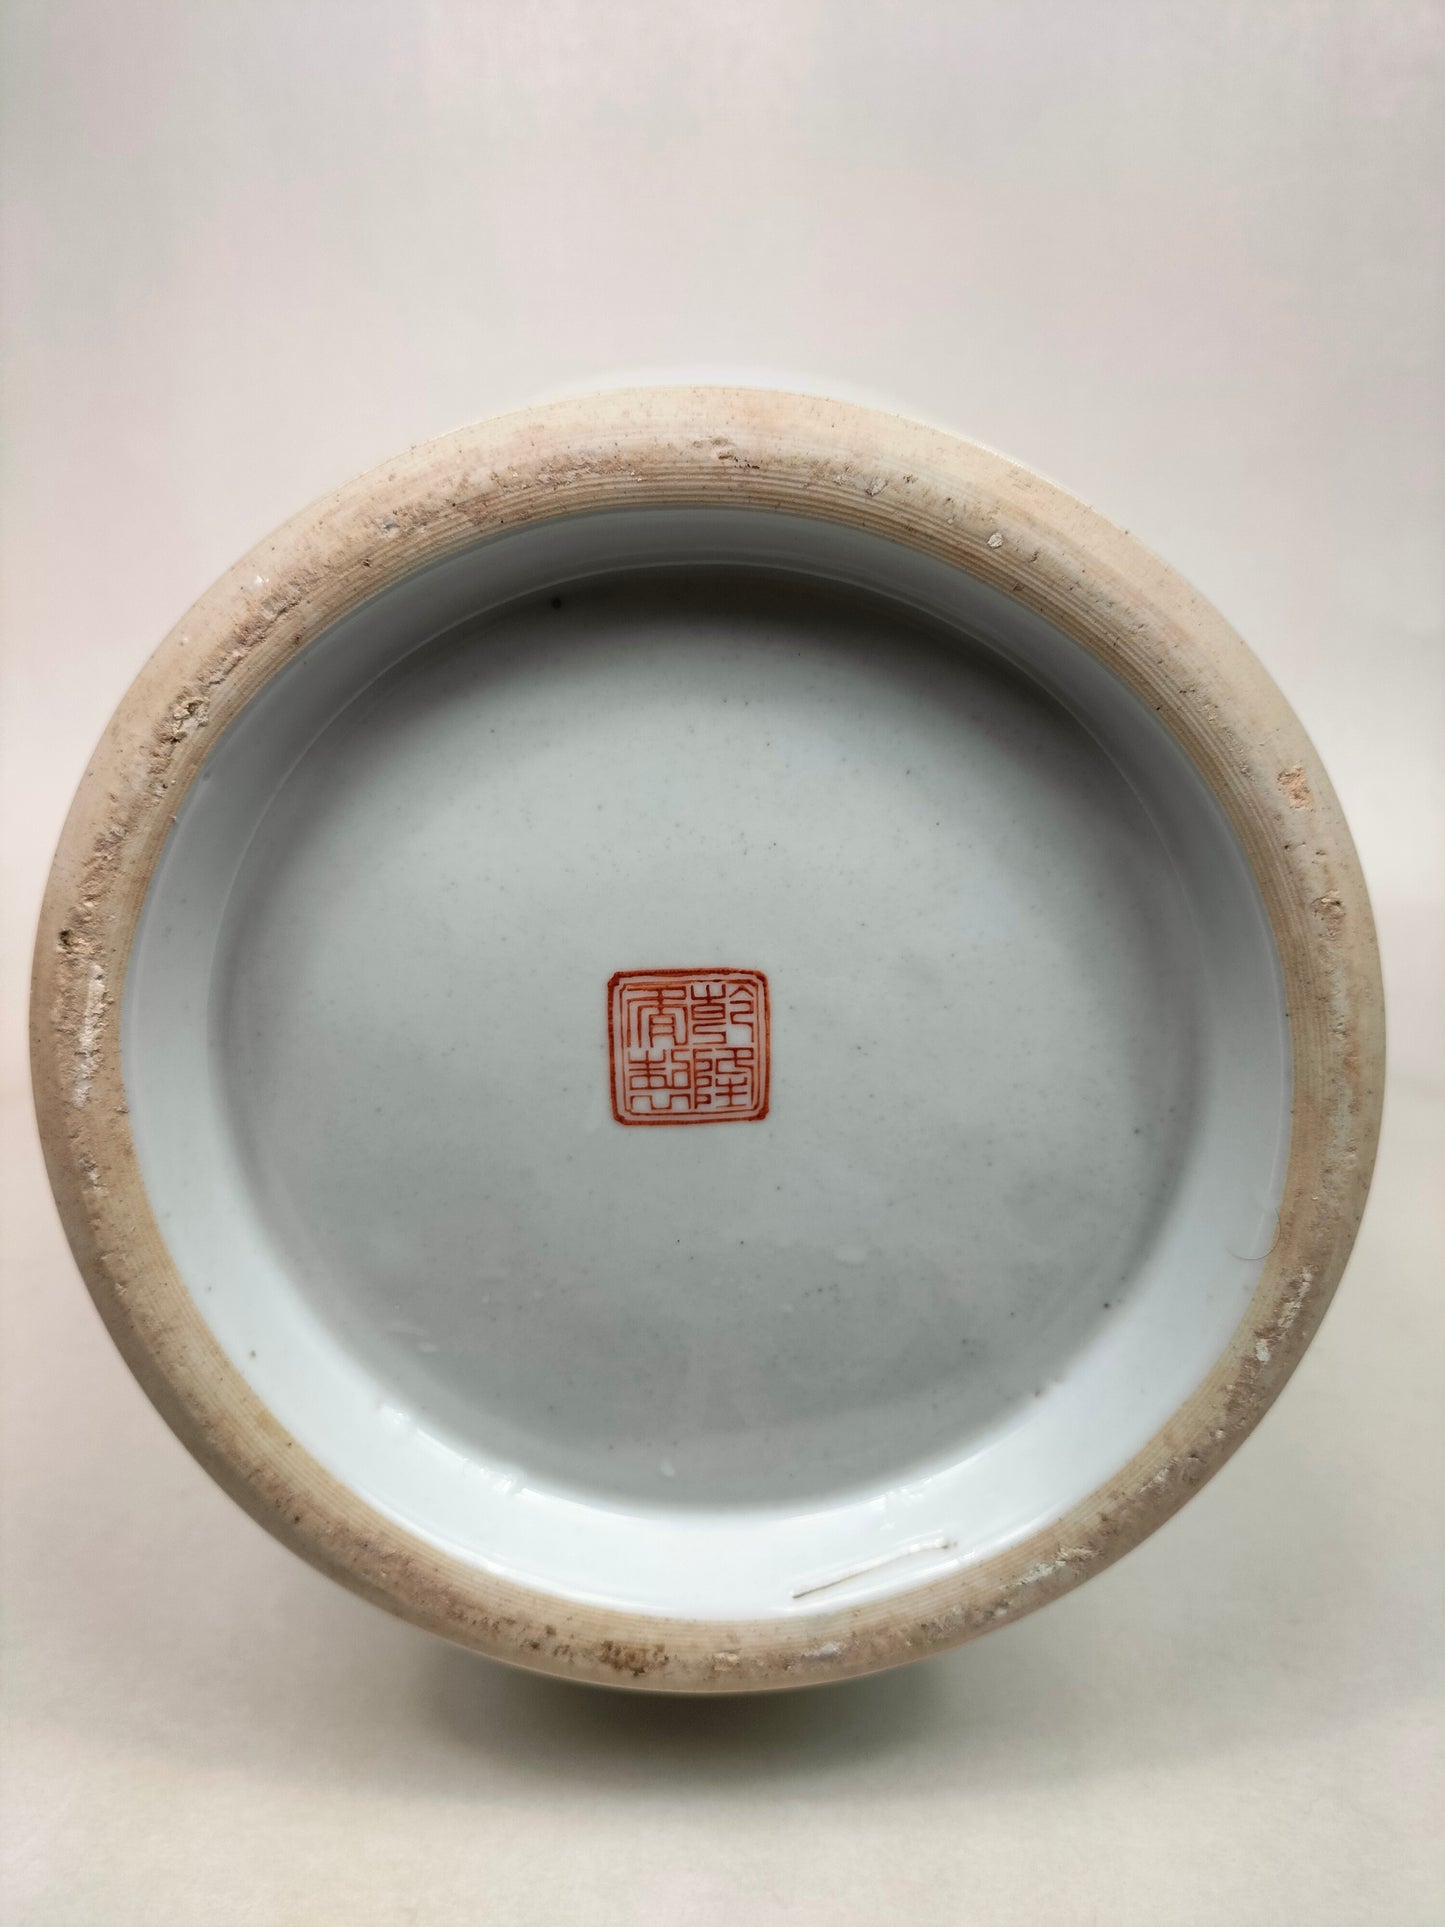 Grande vaso chinês da família rosa com figuras // Jingdezhen - século XX